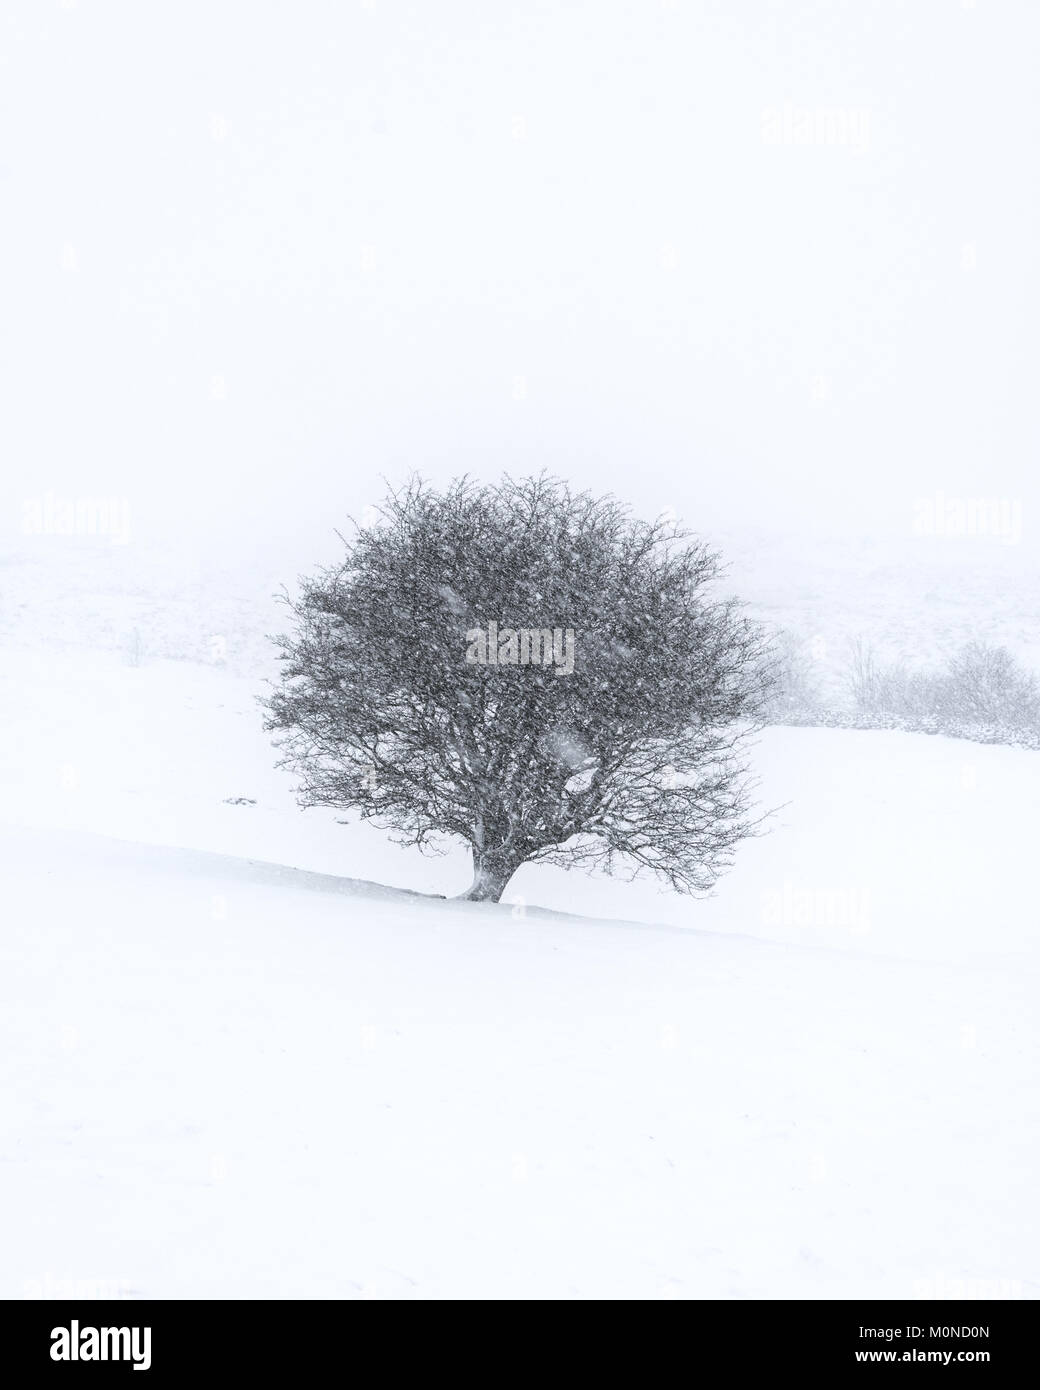 Un árbol solitario añade contraste con un paisaje blanco durante una tormenta de nieve Foto de stock